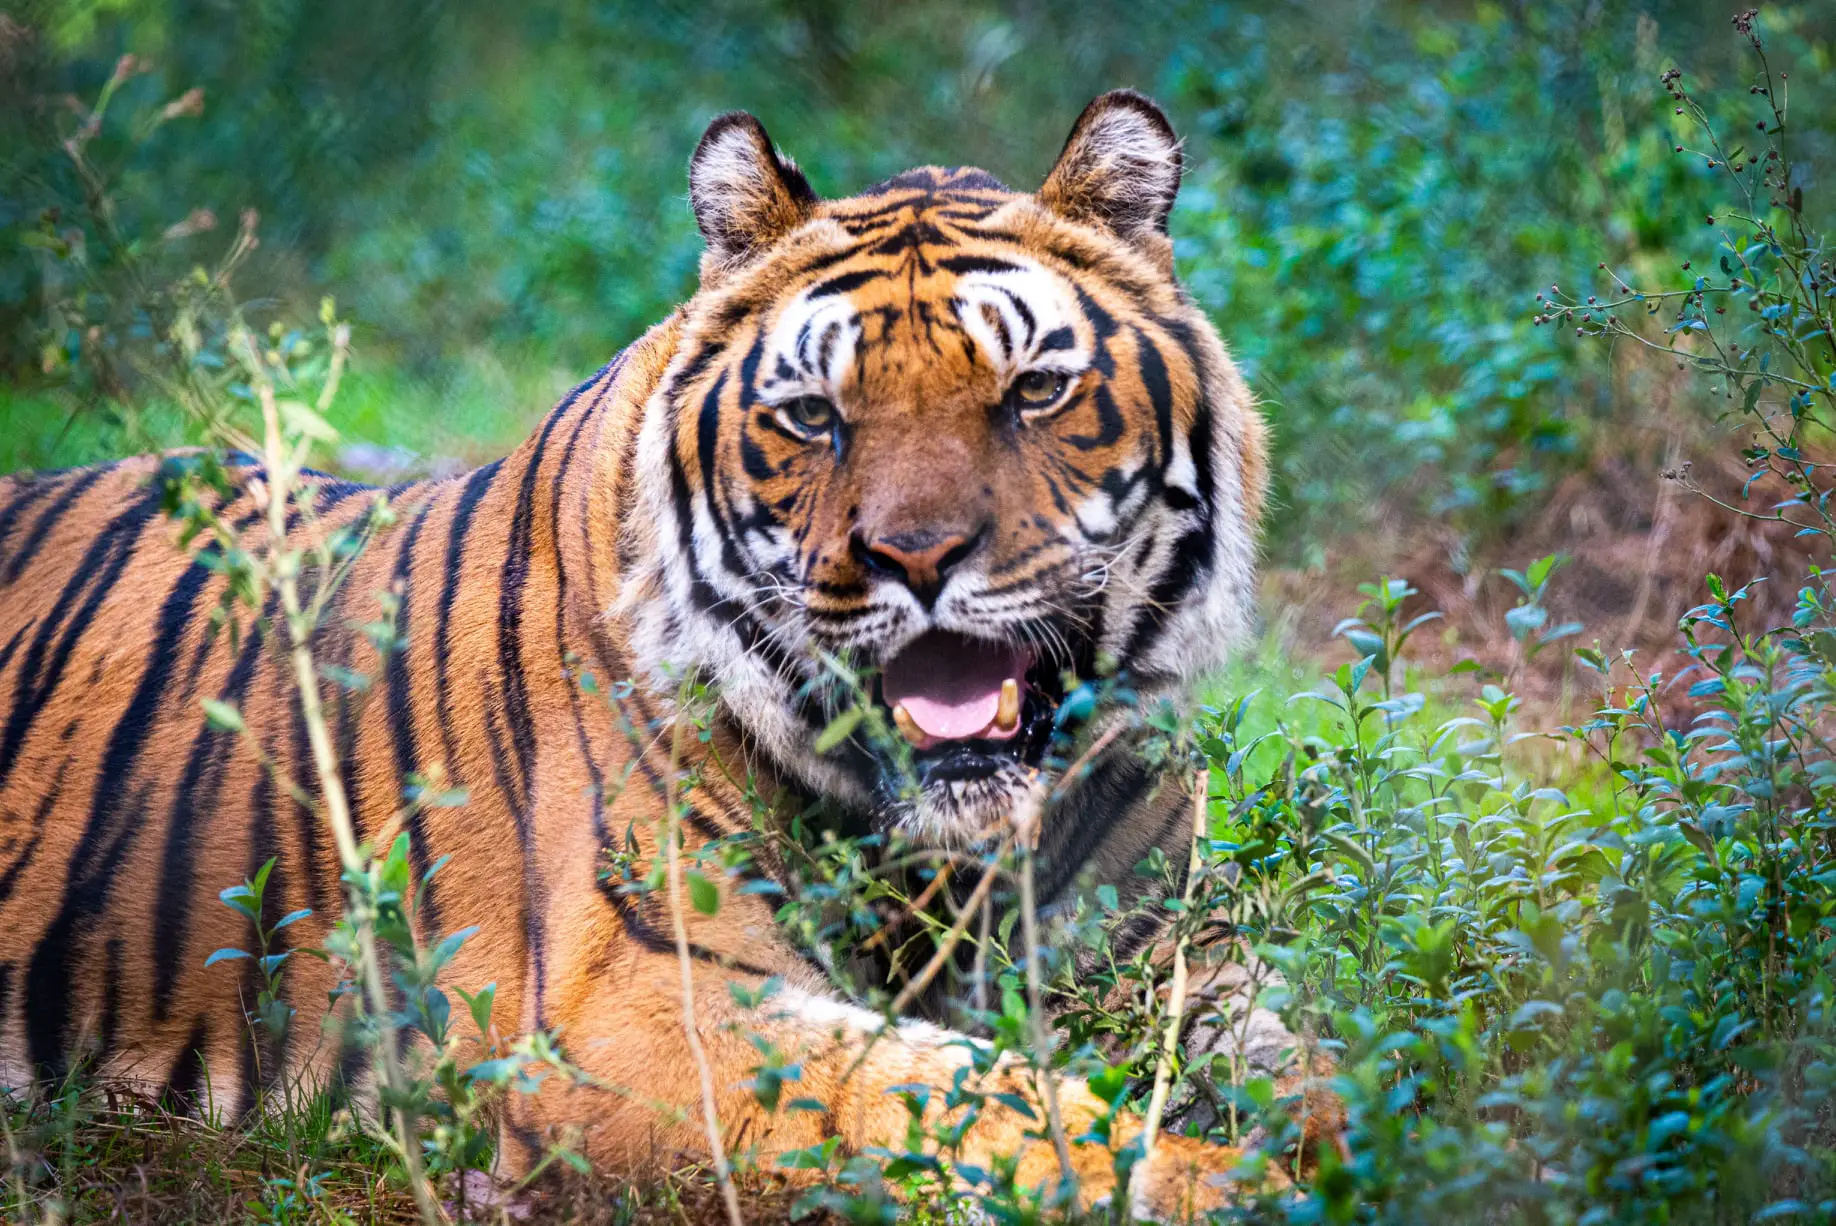 Kalagarh Tiger Reserve lansdown safari tours, Ticket , Timings